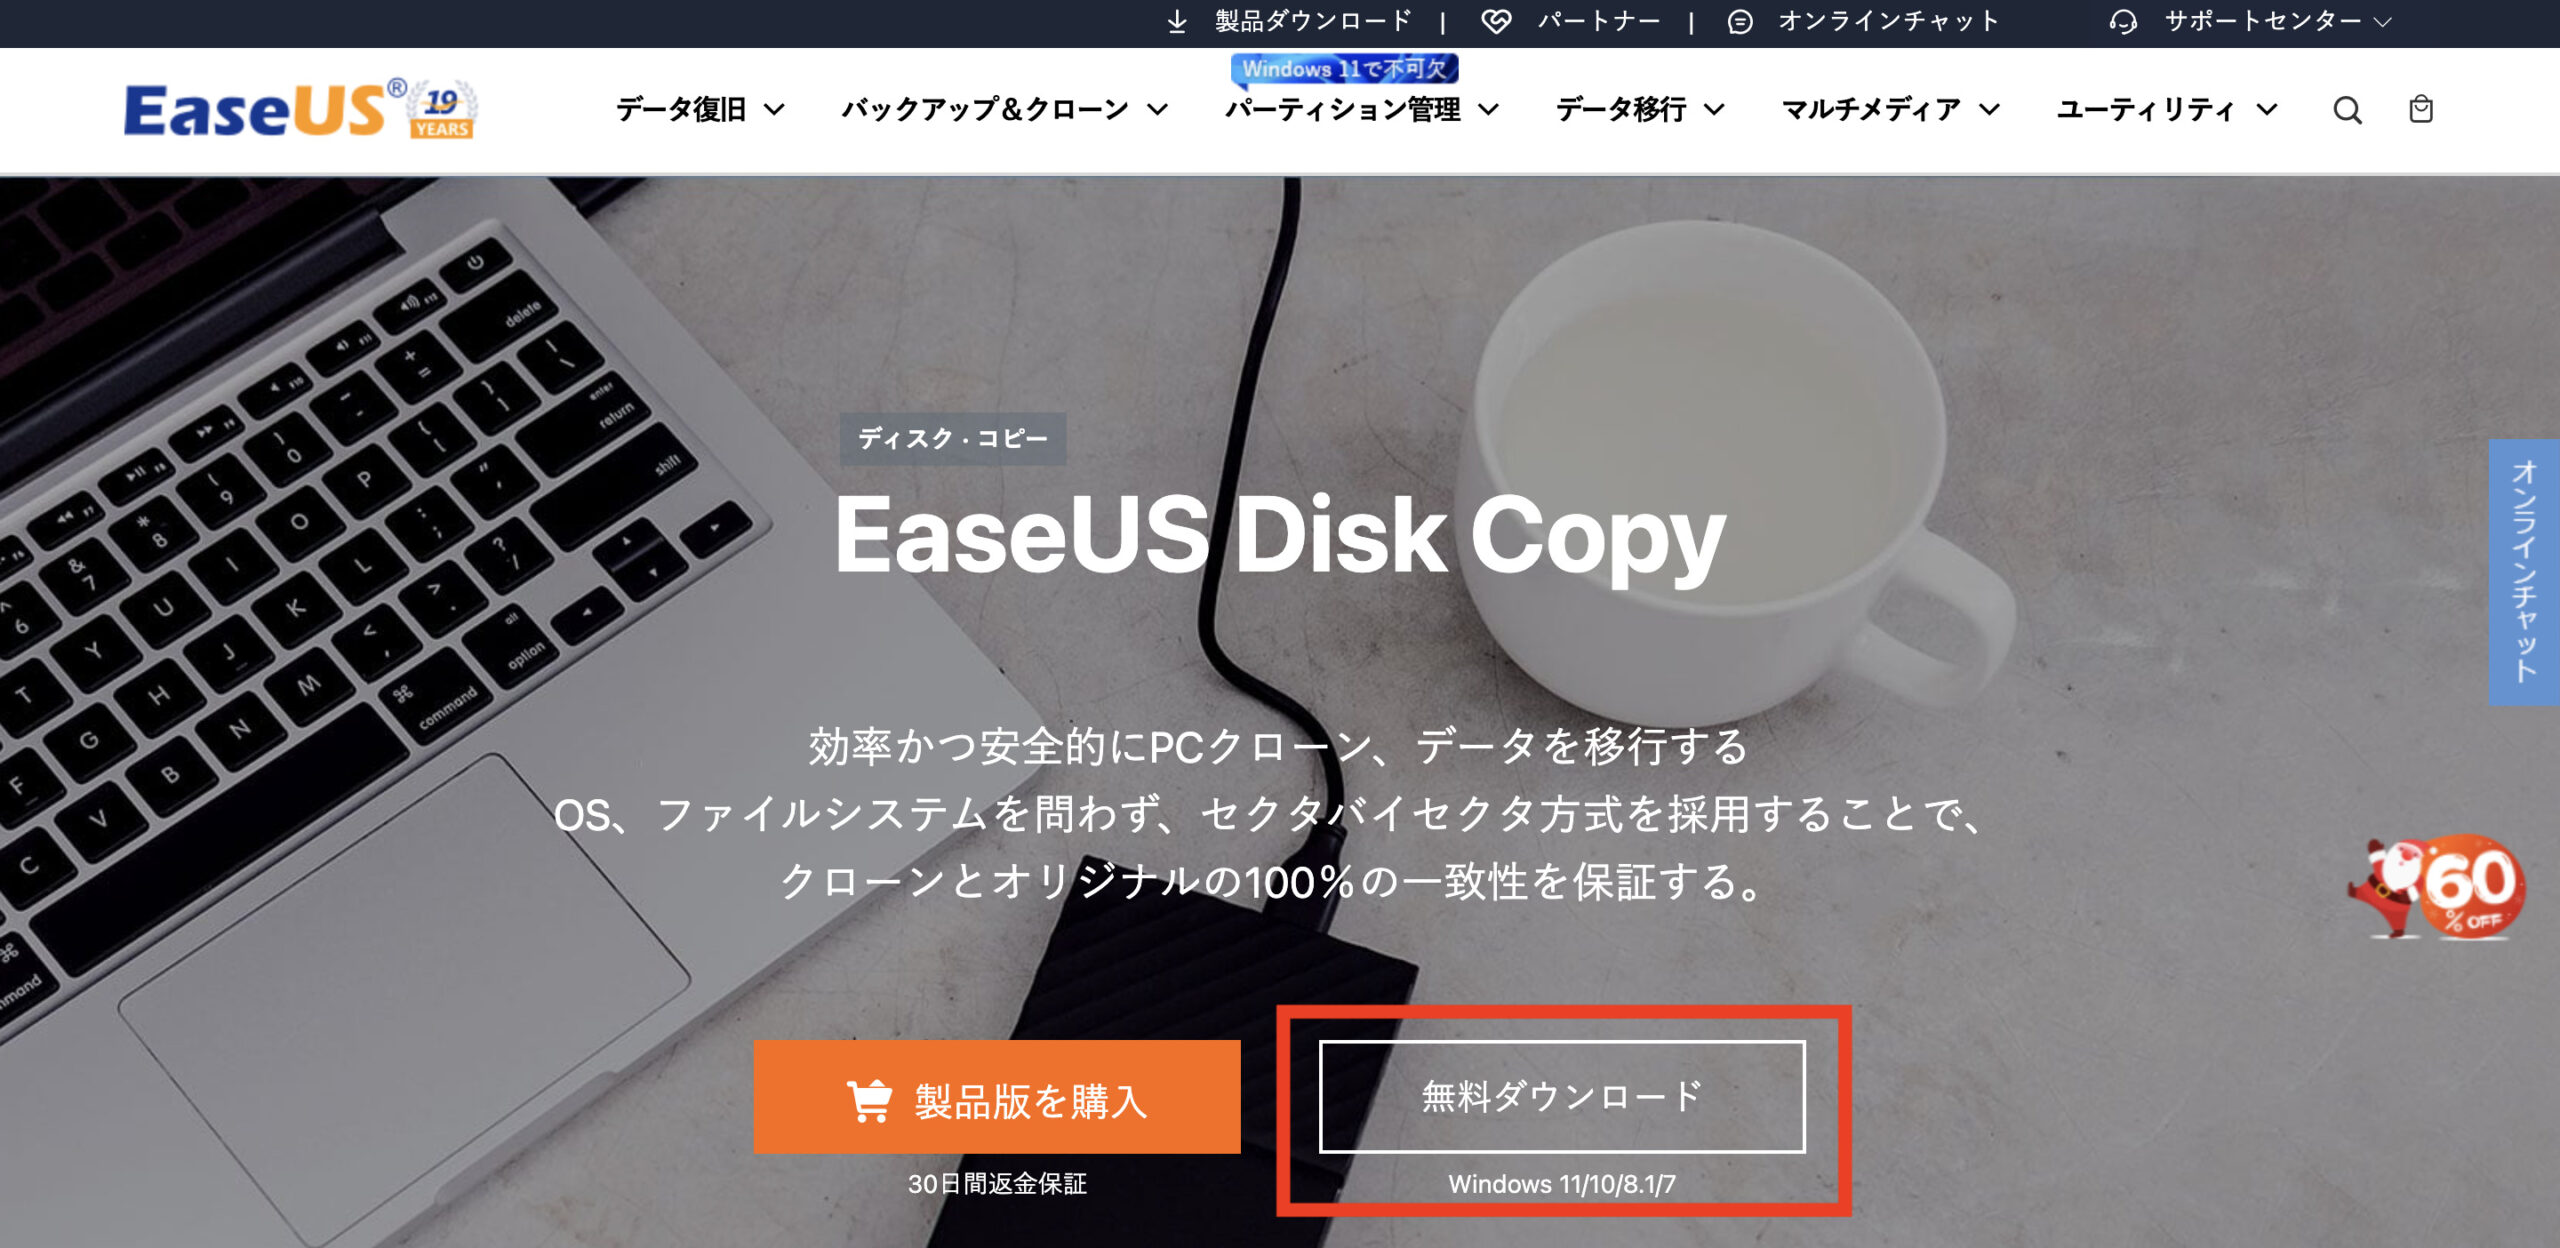 easeus-disk-copy-install1